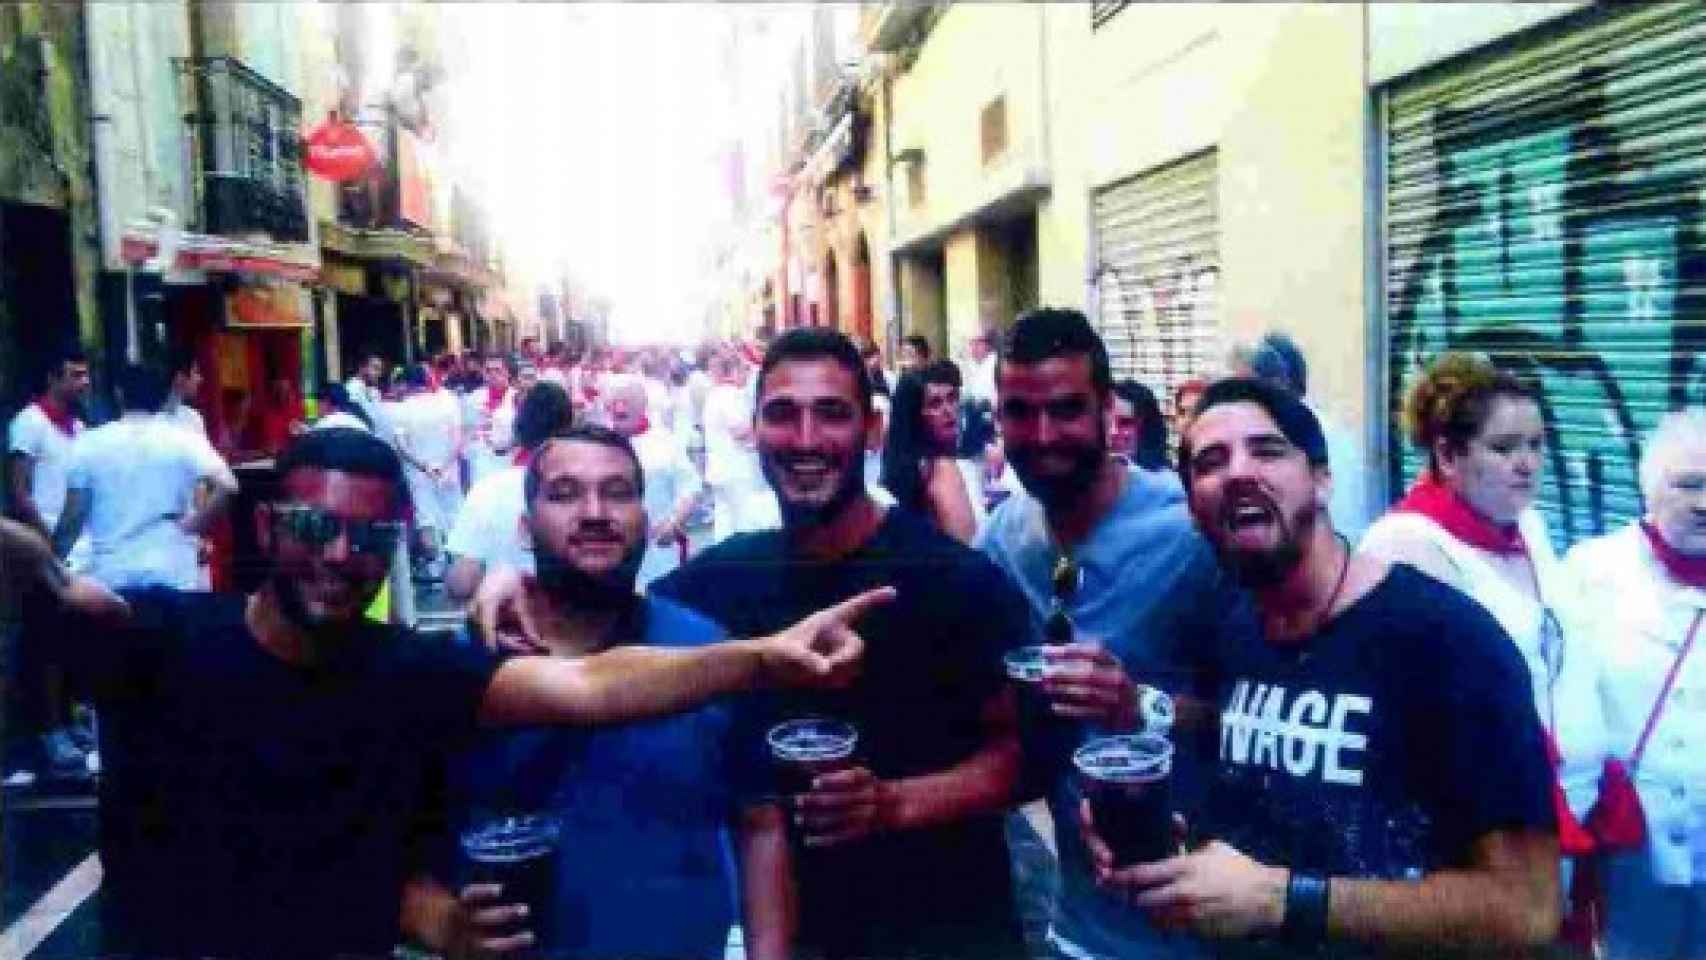 El 6 de julio de 2016 por la tarde, varias horas antes de la presunta violación, los miembros de La Manada disfrutan de las calles de Pamplona.